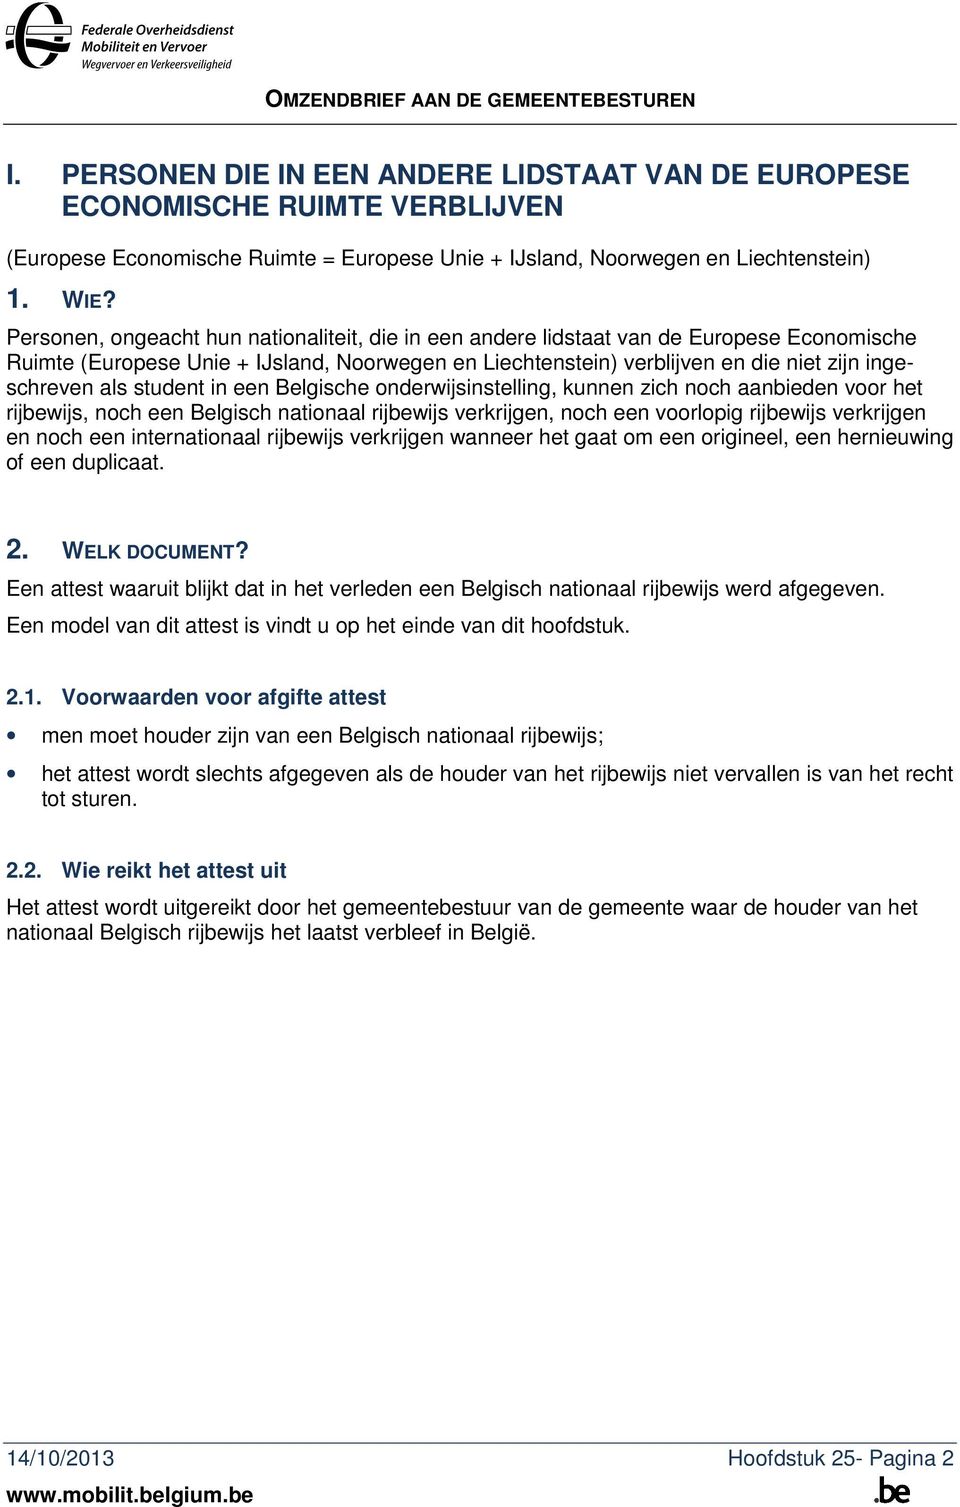 student in een Belgische onderwijsinstelling, kunnen zich noch aanbieden voor het rijbewijs, noch een Belgisch nationaal rijbewijs verkrijgen, noch een voorlopig rijbewijs verkrijgen en noch een